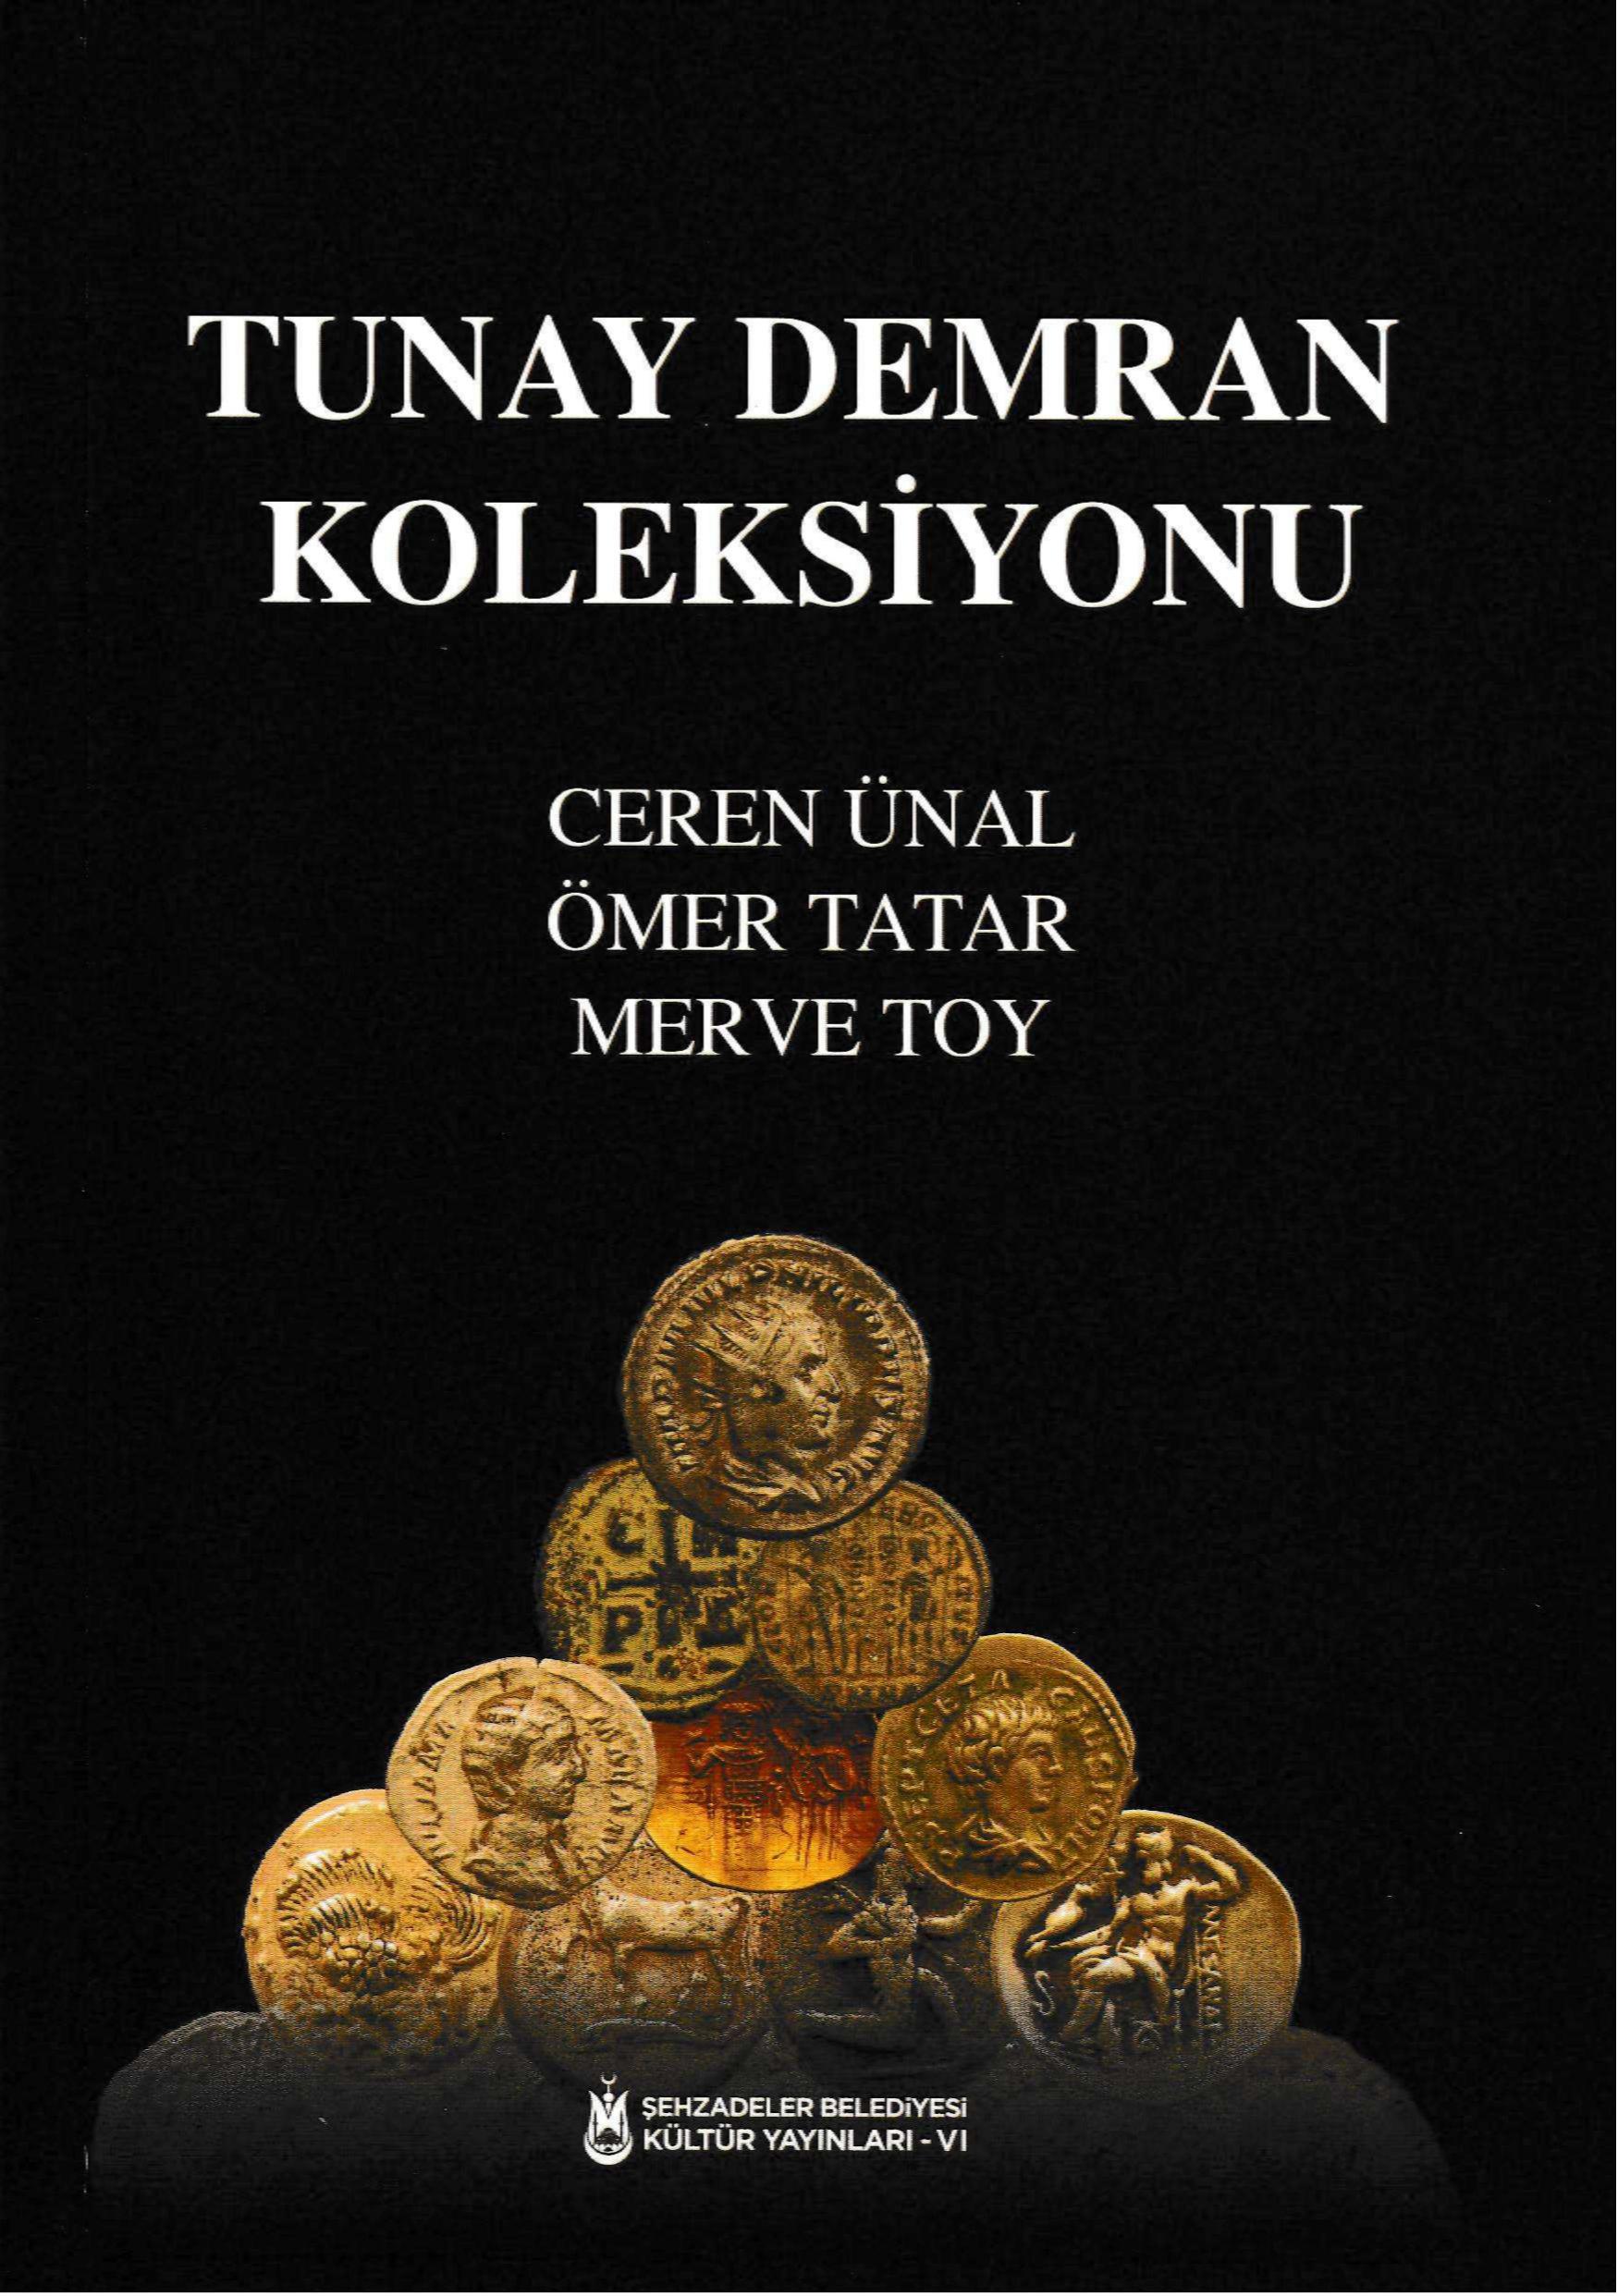 Ünal, Ceren – Merve Toy – Ömer Tatar : Tunay Demran Koleksiyonu